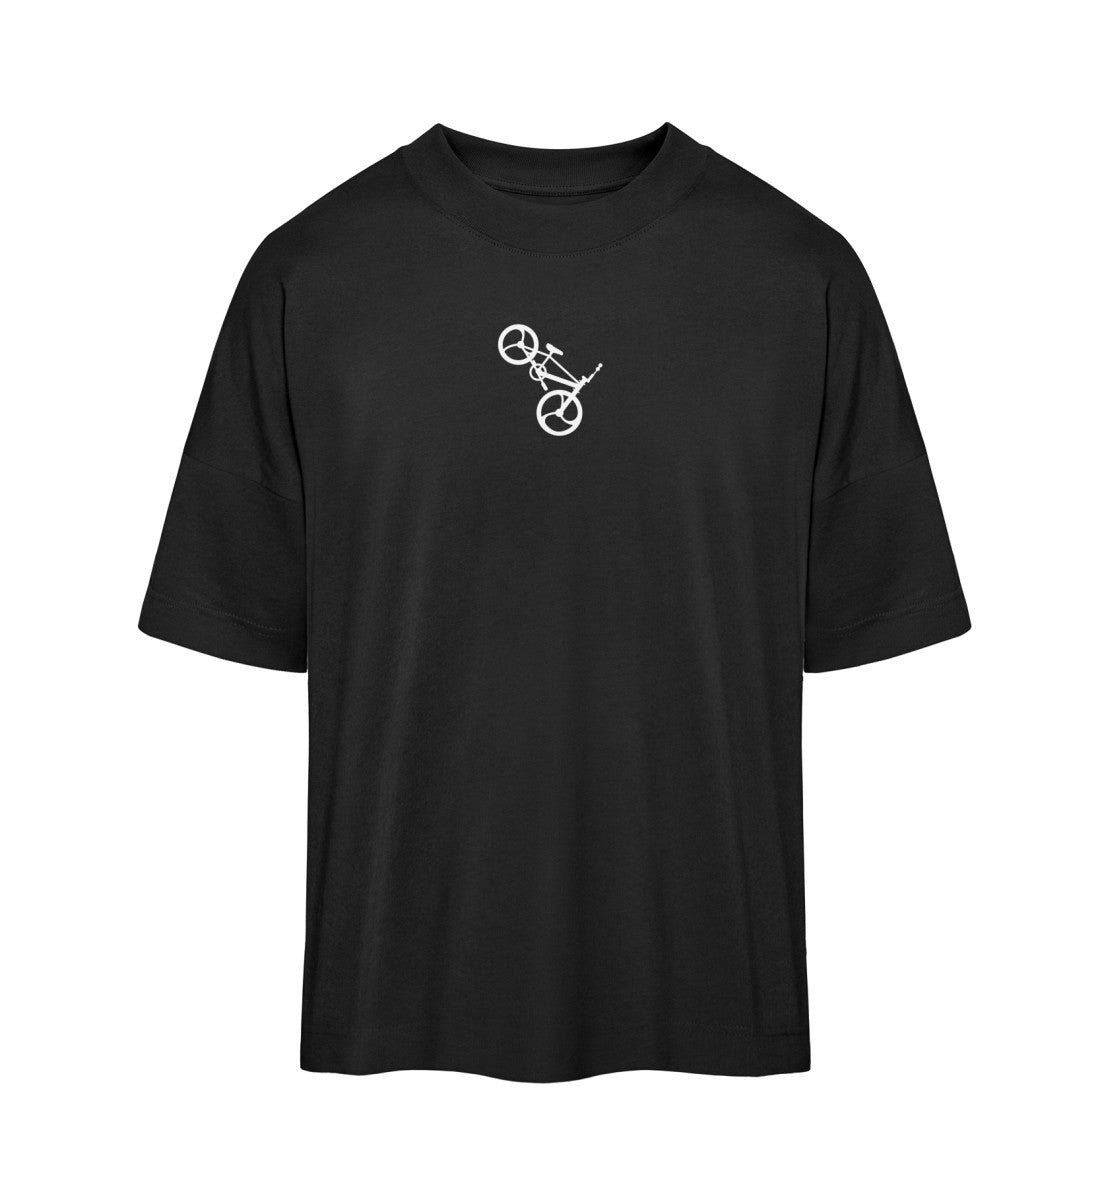 Schwarzes T-Shirt Unisex Oversize Fit für Frauen und Männer bedruckt mit dem Design der Roger Rockawoo Kollektion BMX Tiny